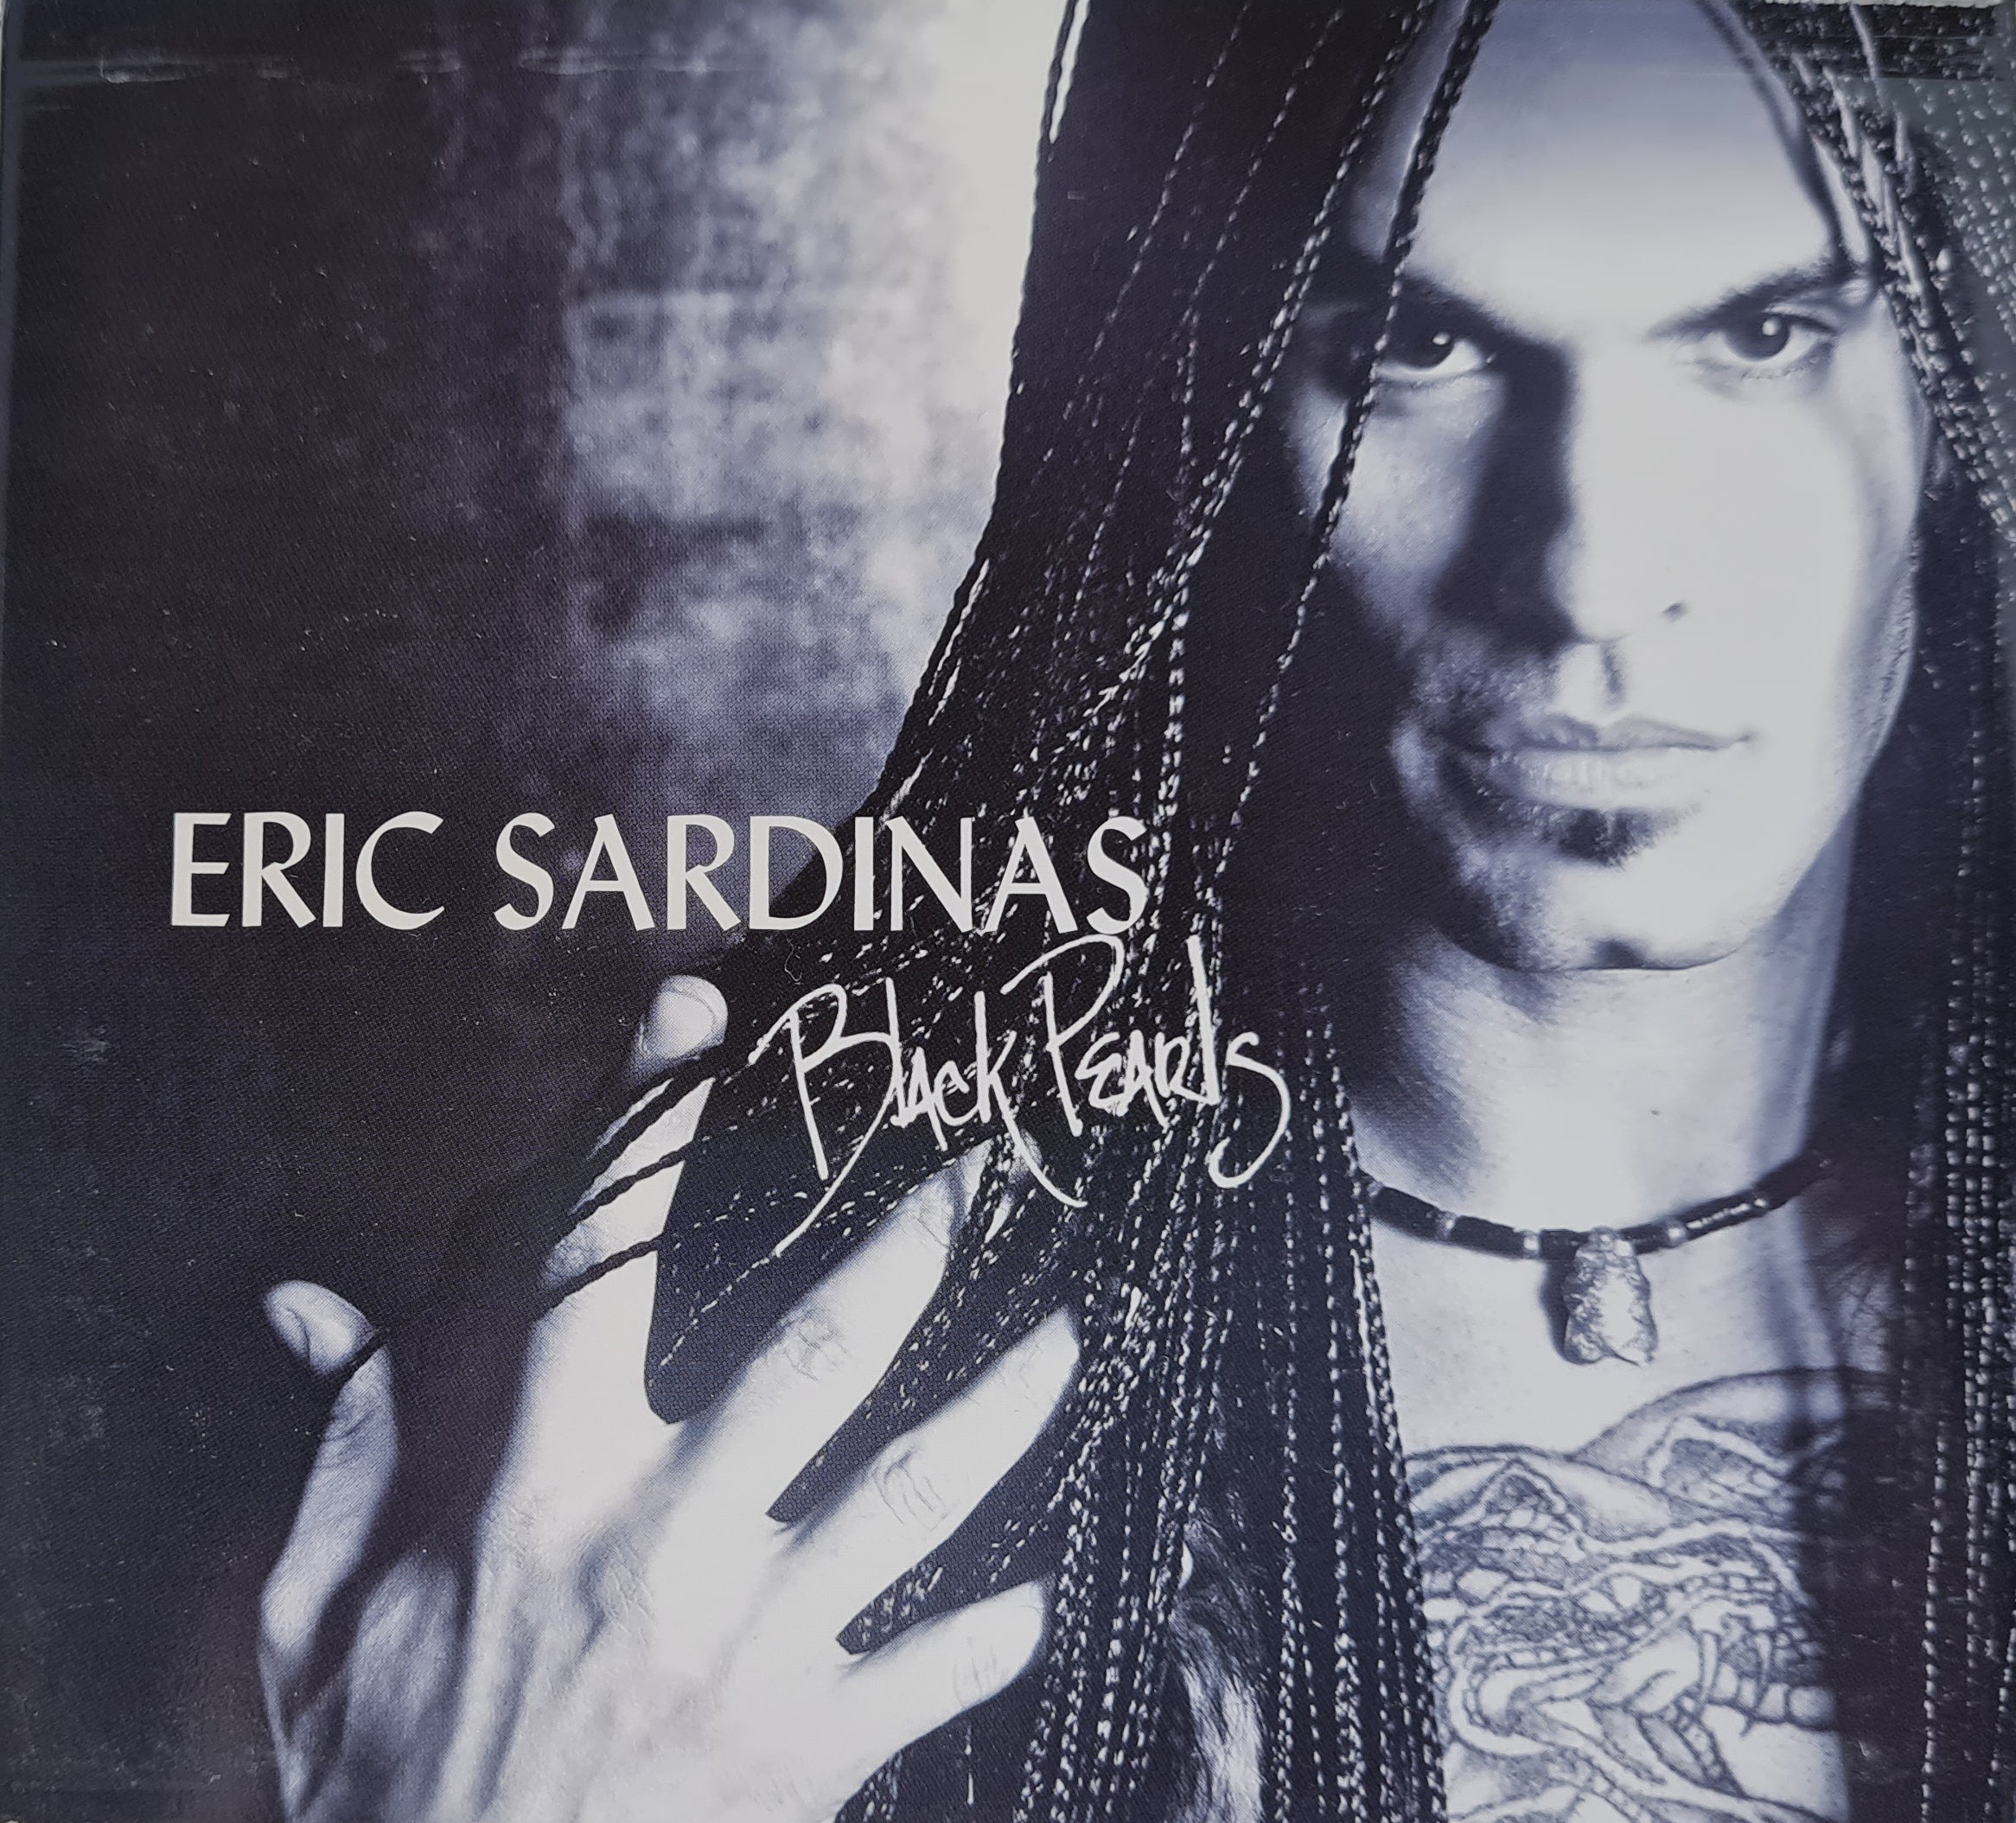 Eric Sardinas - Black Pearls (CD)